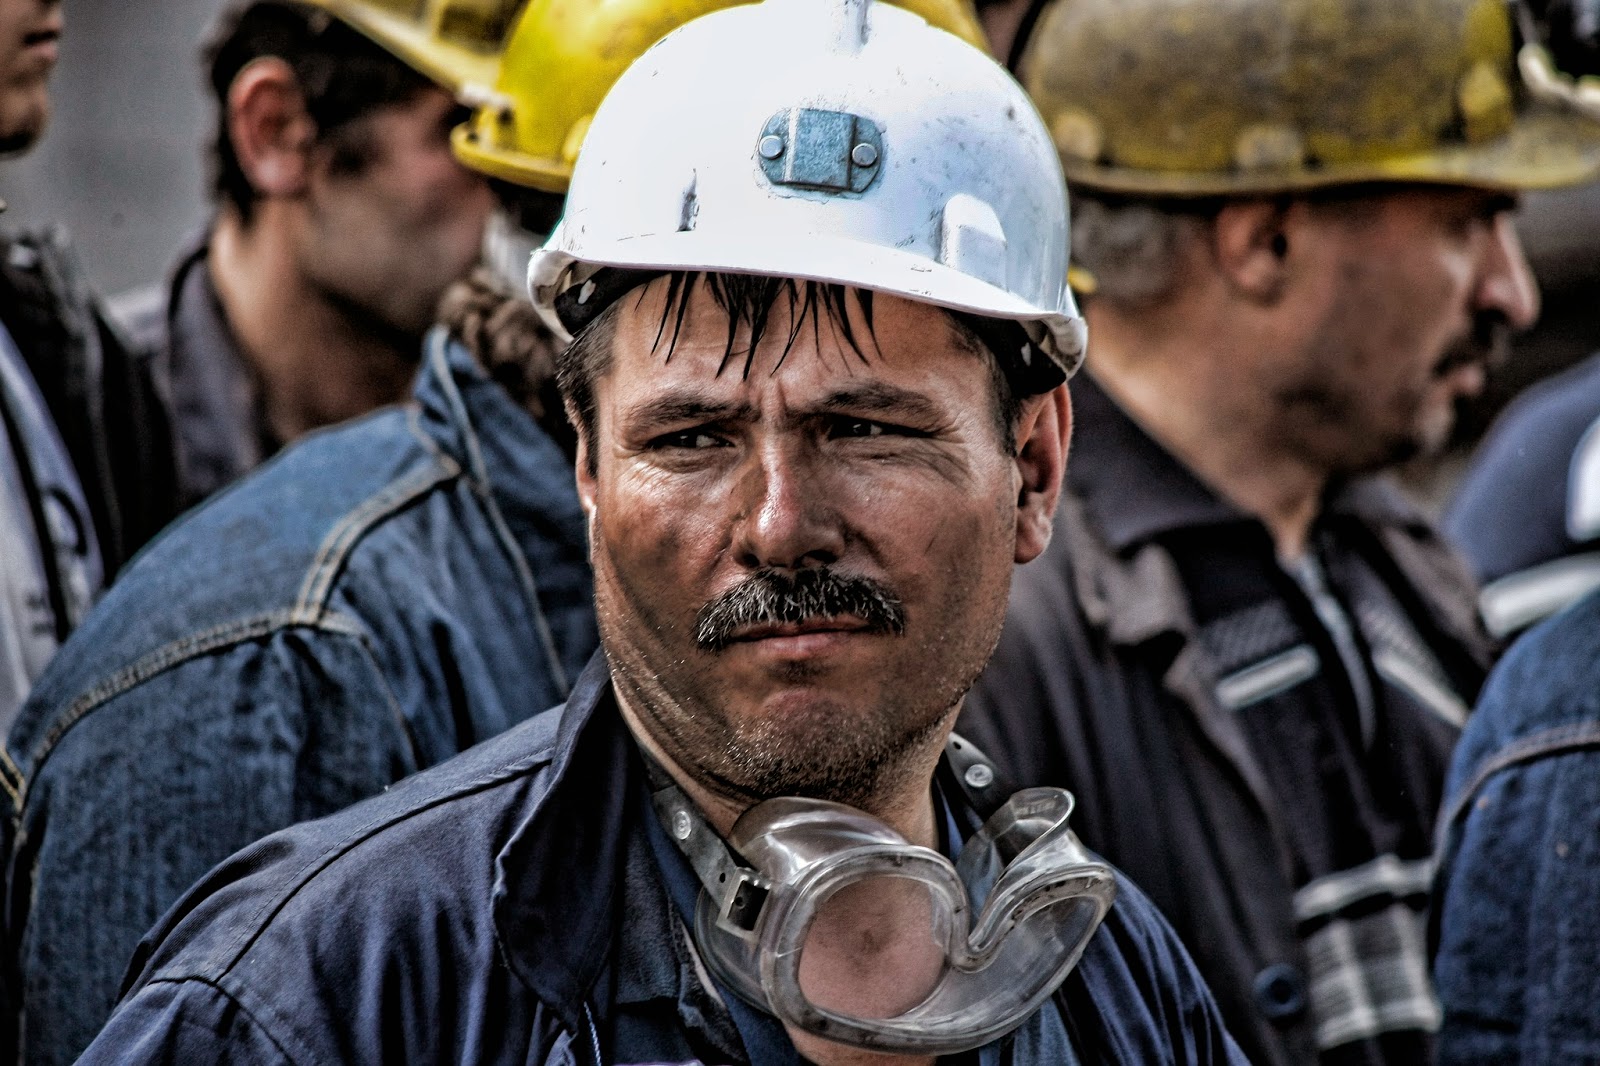 Maden ocağında göçük: 1 işçi mahsur